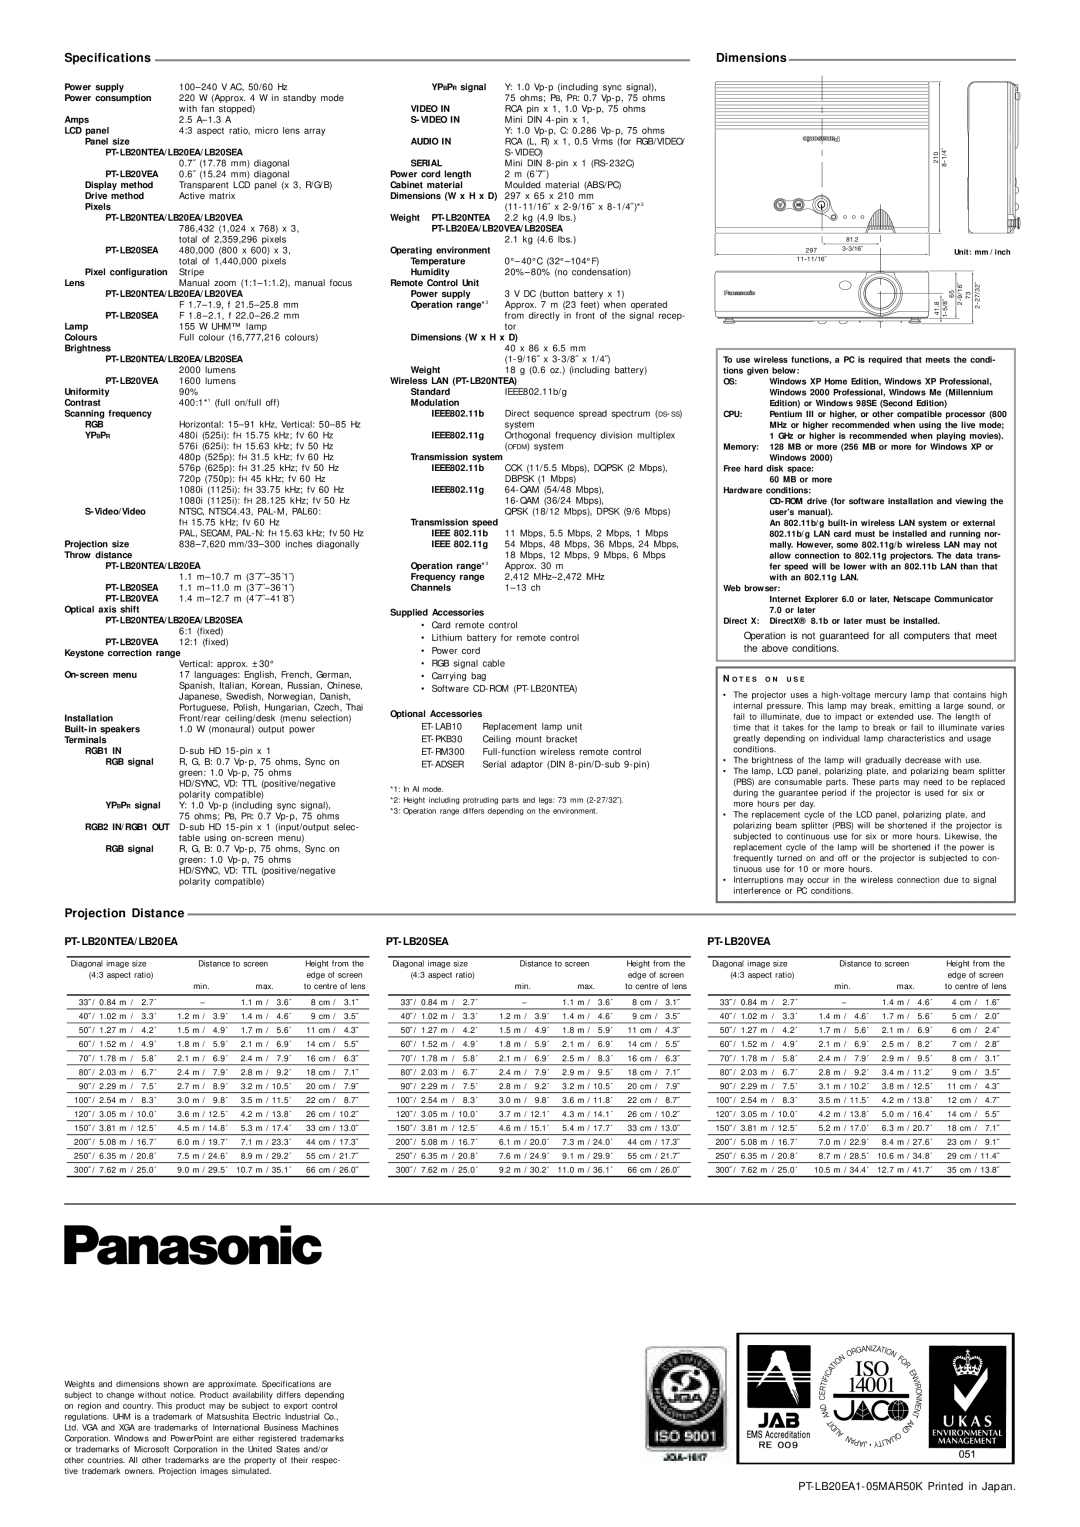 Panasonic PT-LB20EA manual Specifications, Dimensions, Projection Distance, PT-LB20NTEA/LB20EA, PT-LB20SEA, PT-LB20VEA 